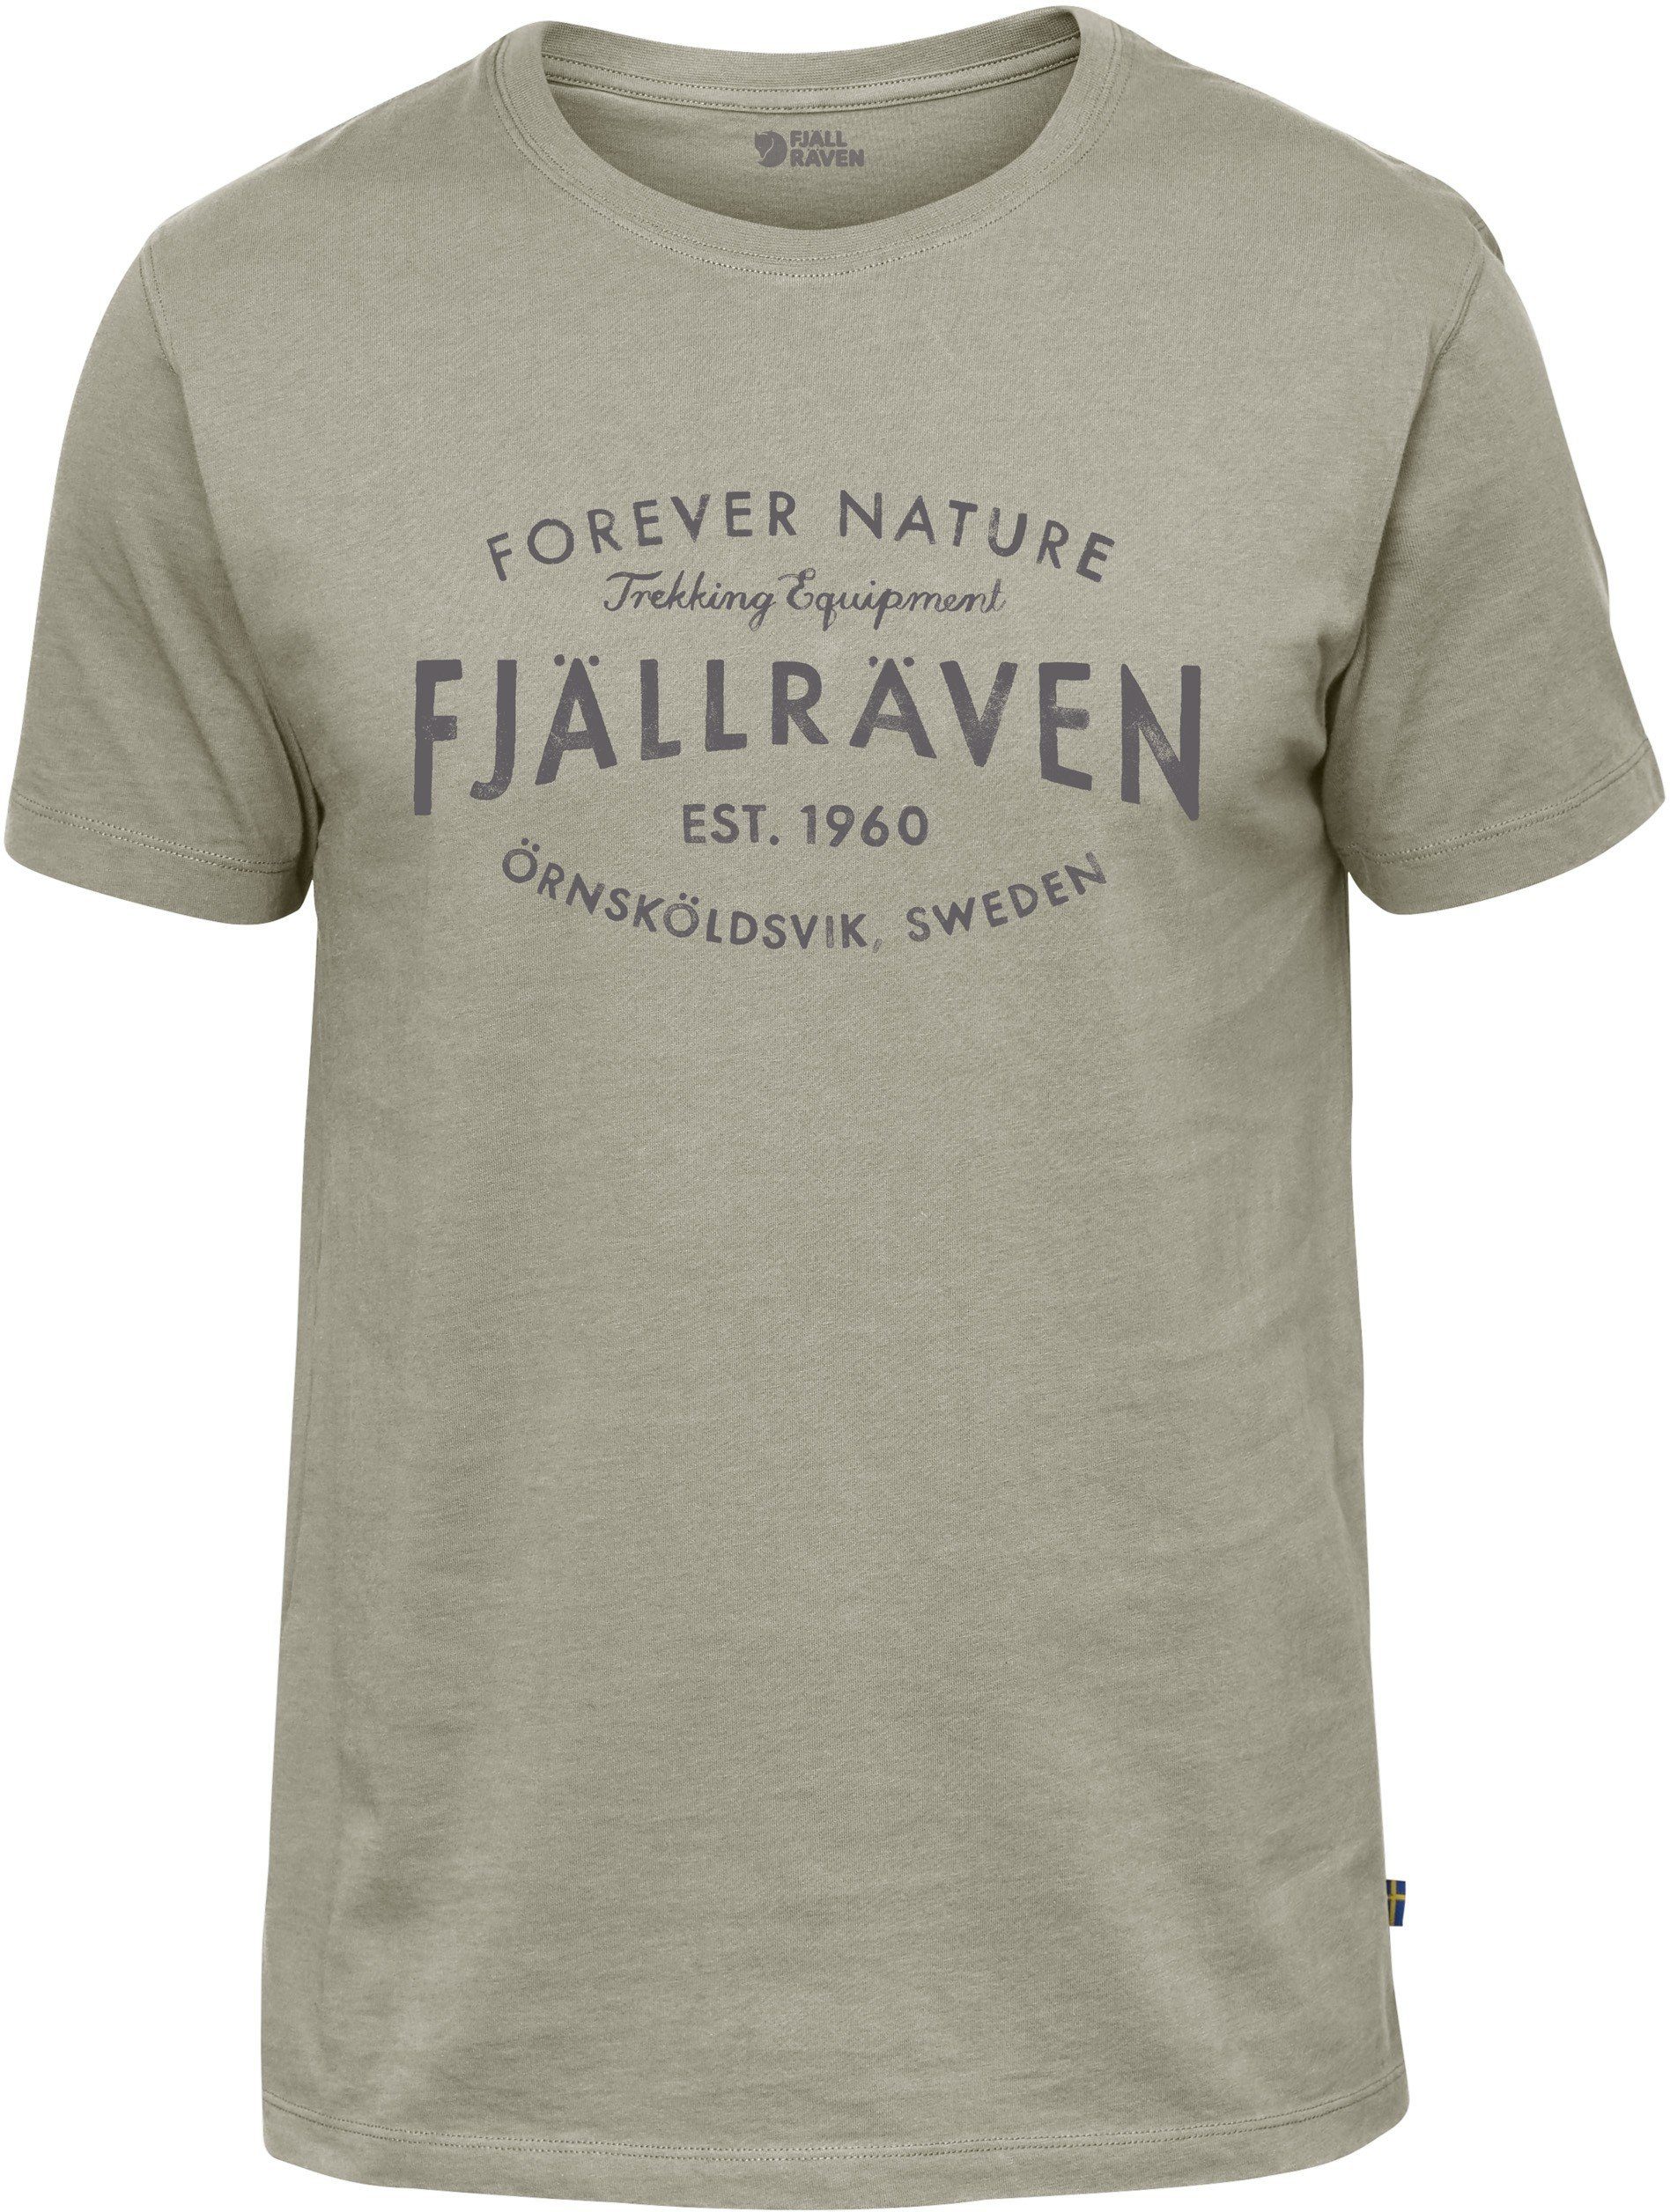 Fjällräven T-Shirt Fjällräven Est.1960 T-Shirt